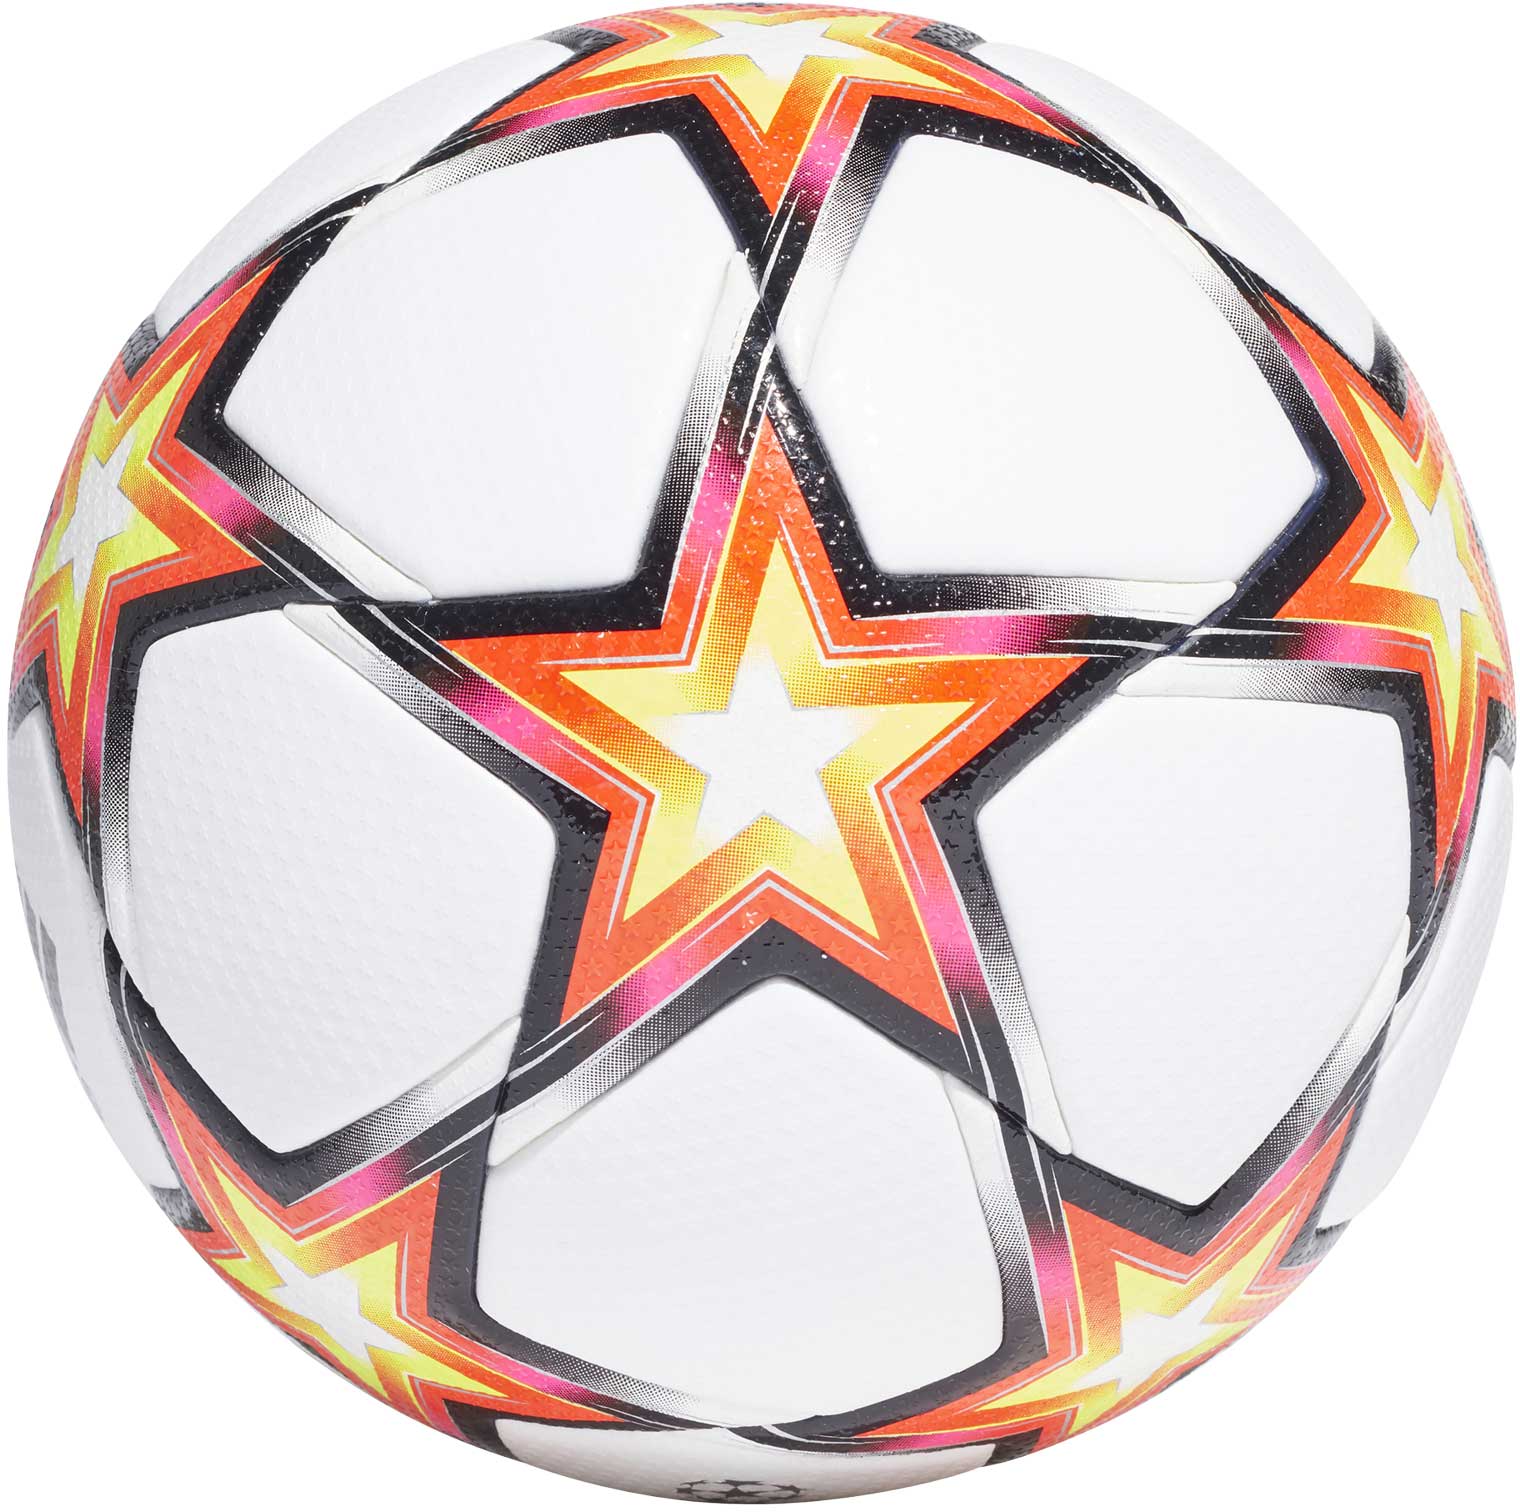 Zápasový fotbalový míč